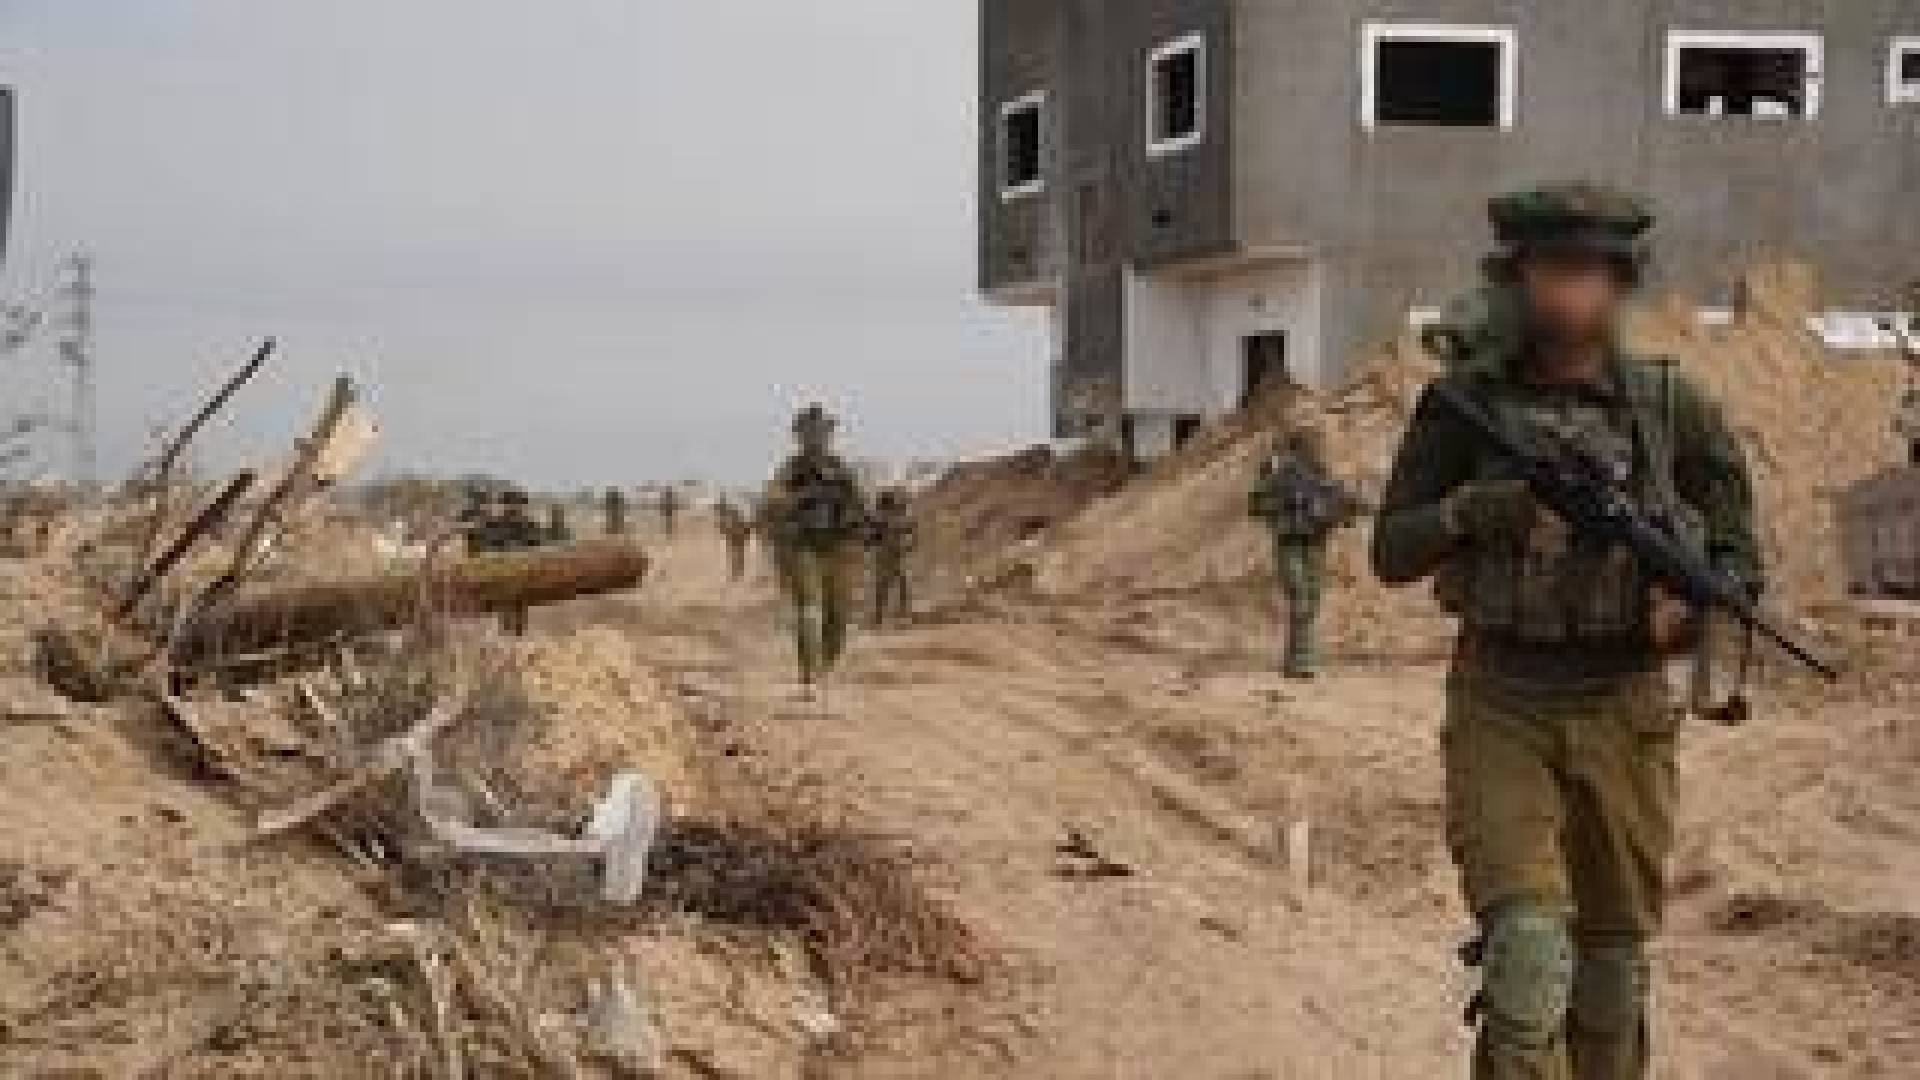 الجيش الإسرائيلي يقدم خطة لإجلاء المدنيين من رفح جنوب غزة